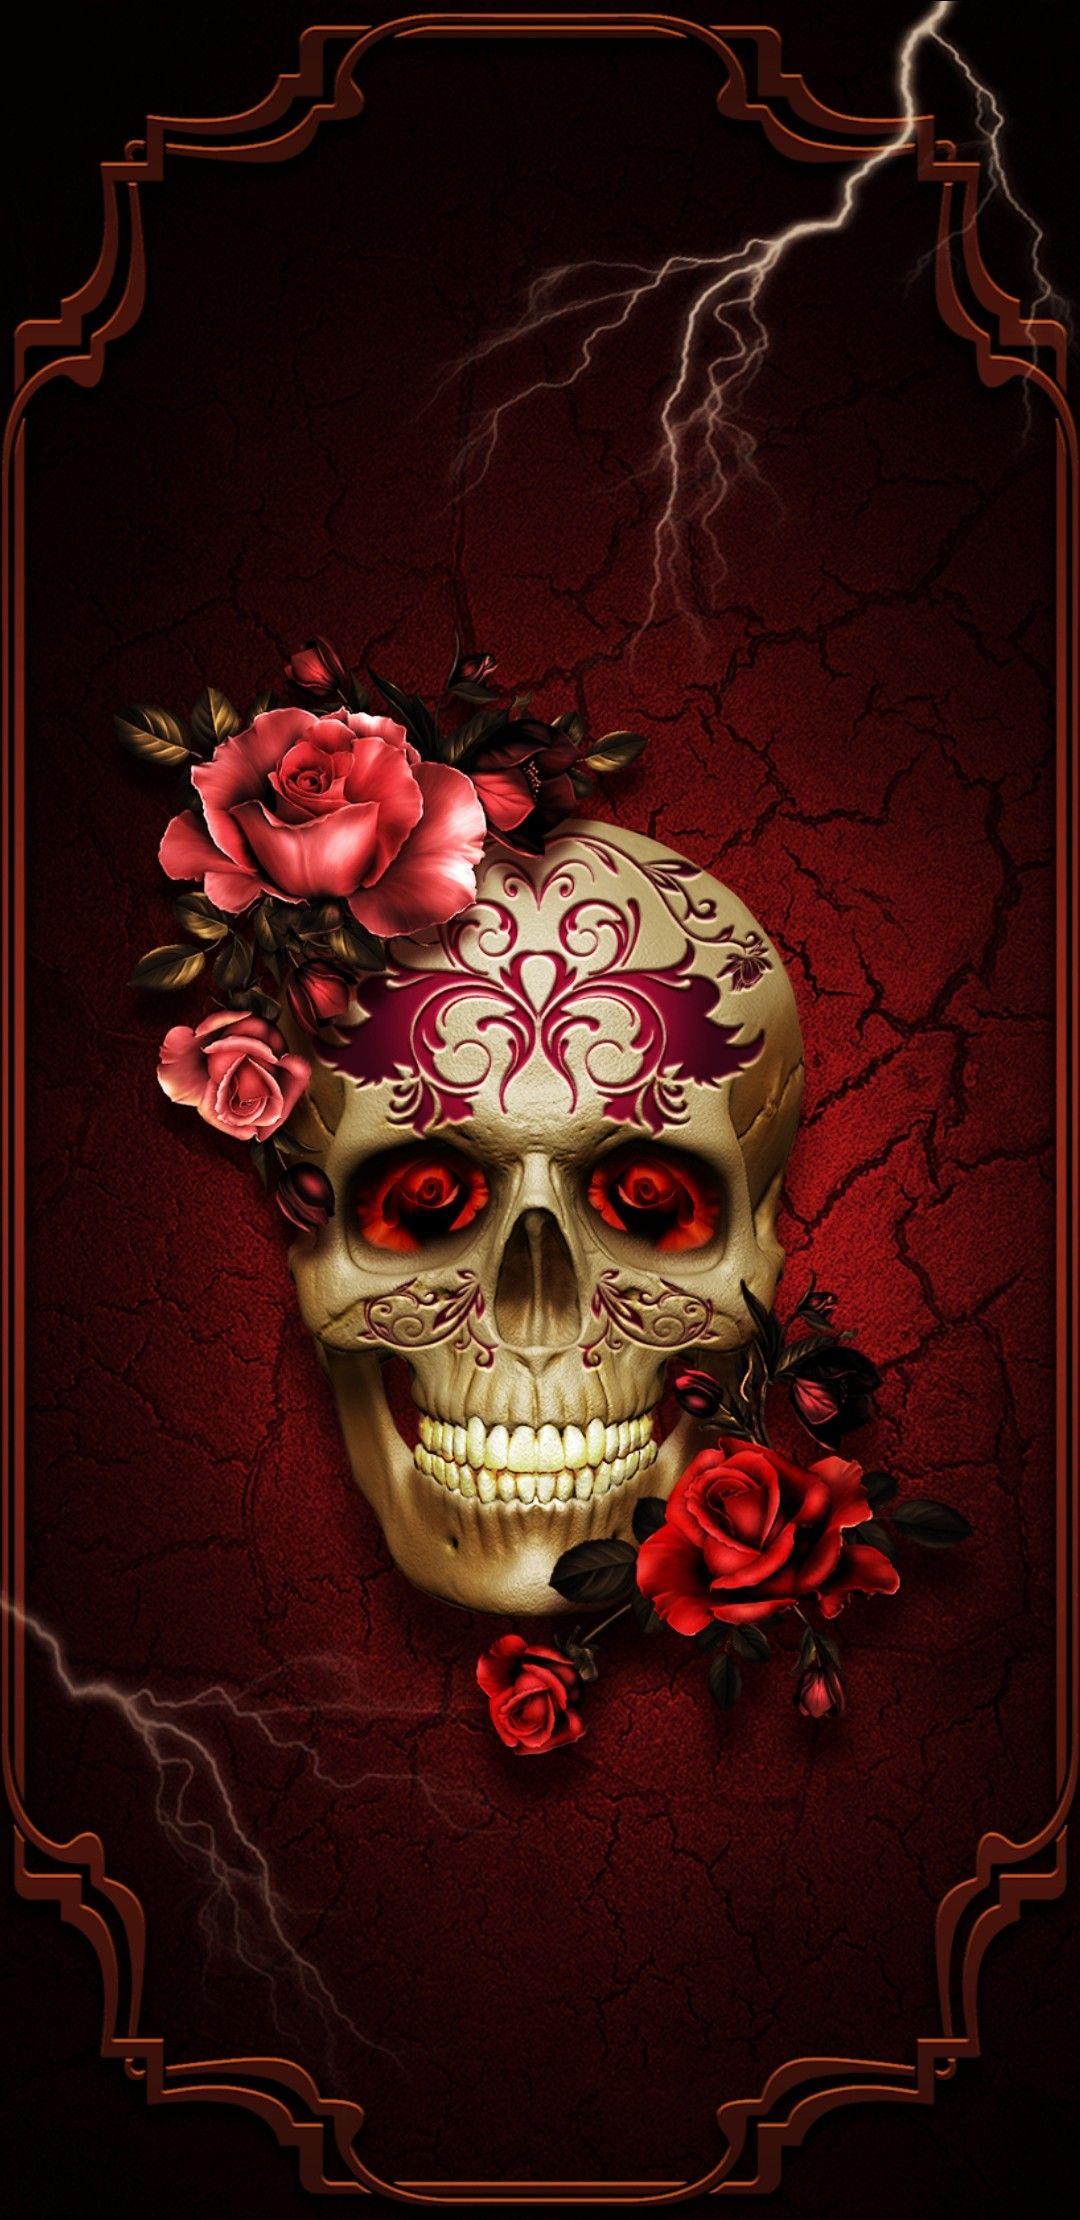 MidNightAngel7. Skull wallpaper, Skull picture